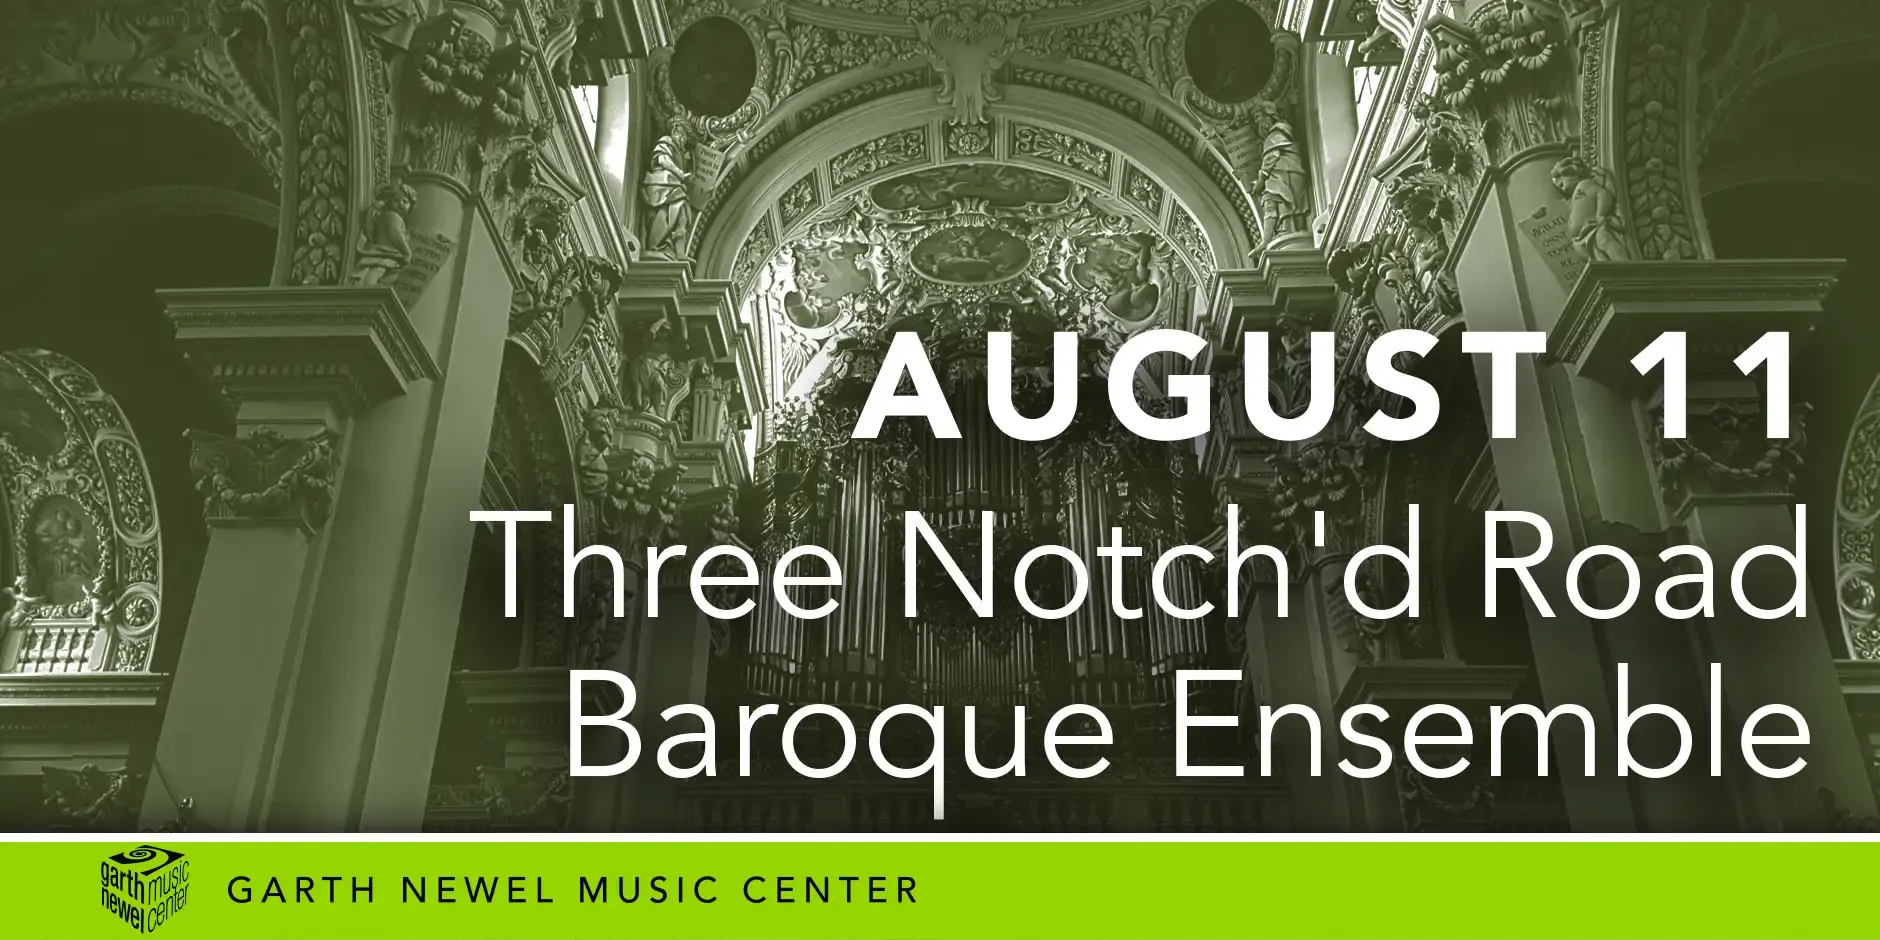 August 11 - Three Notch’d Road Baroque Ensemble